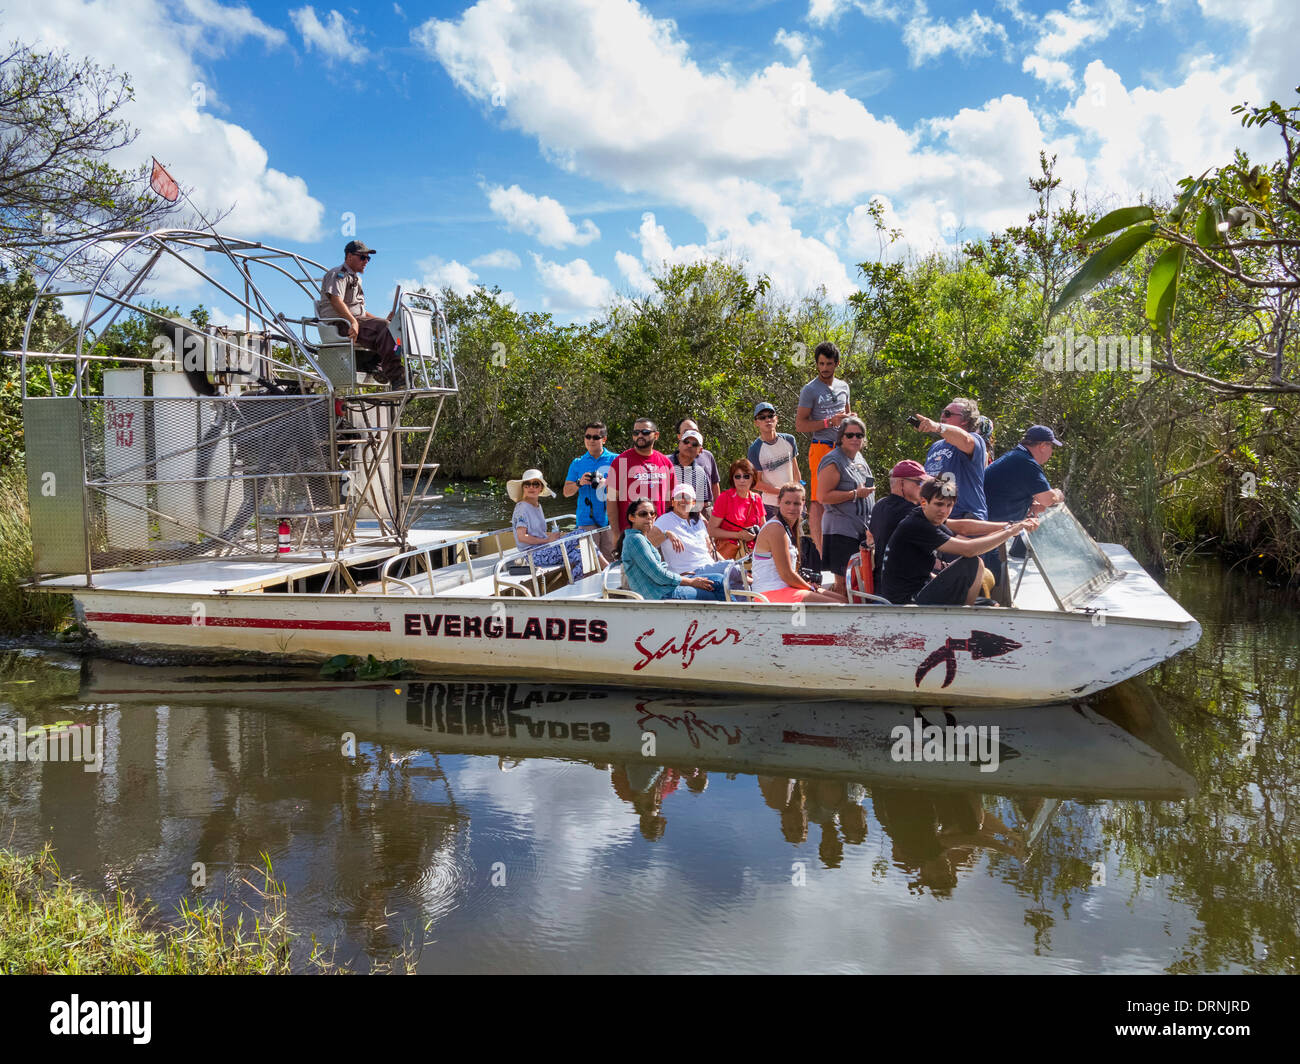 Florida Everglades National Park, USA-Gruppe von Touristen auf einem Airboat sightseeing Fahrt Boot Tour im Sommer Stockfoto